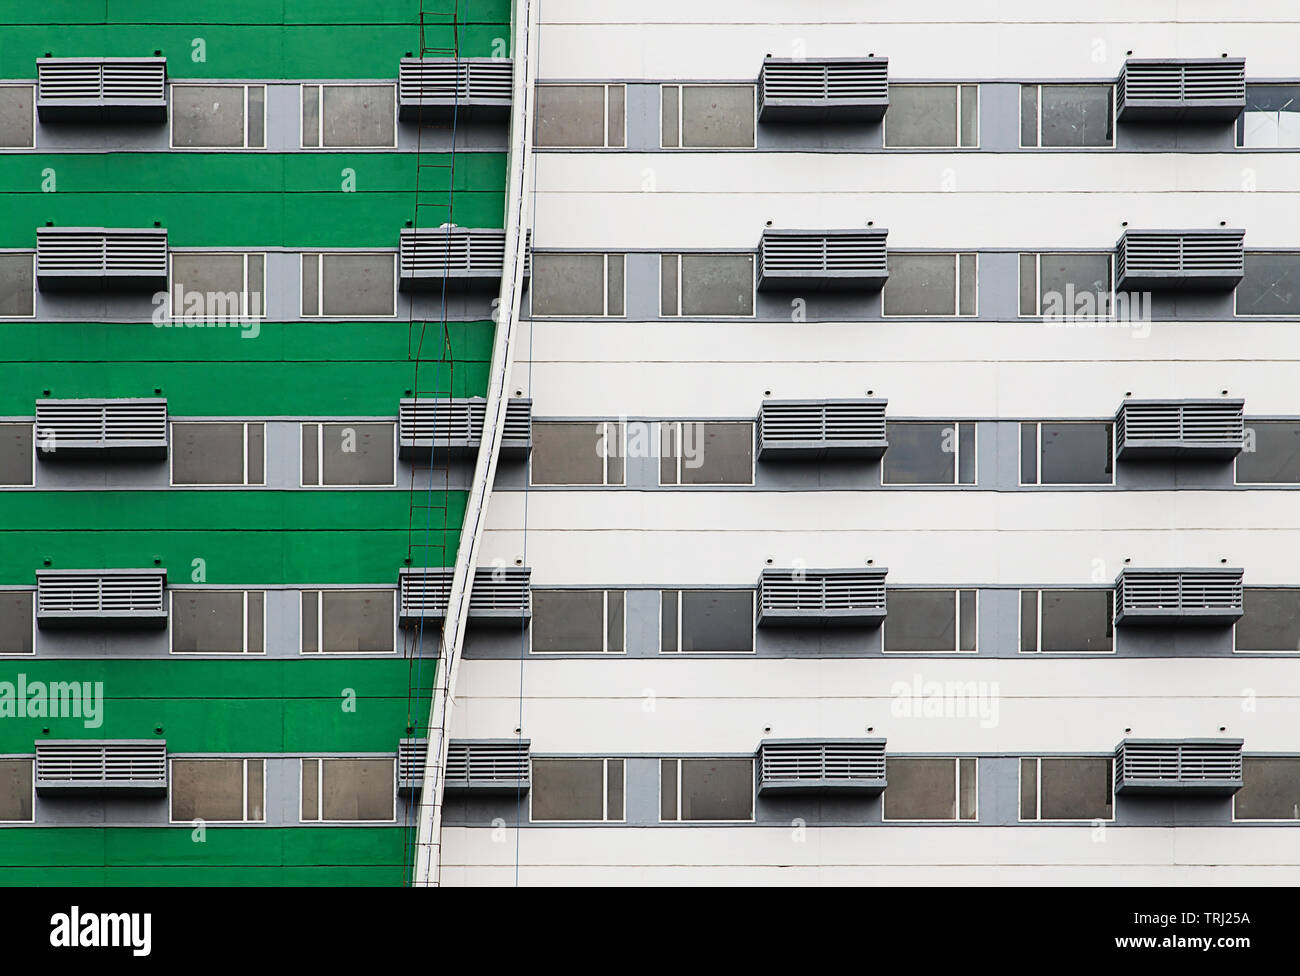 Manila, Philippines - December, 30, 2015: Facade of the new apartment building condominium Stock Photo